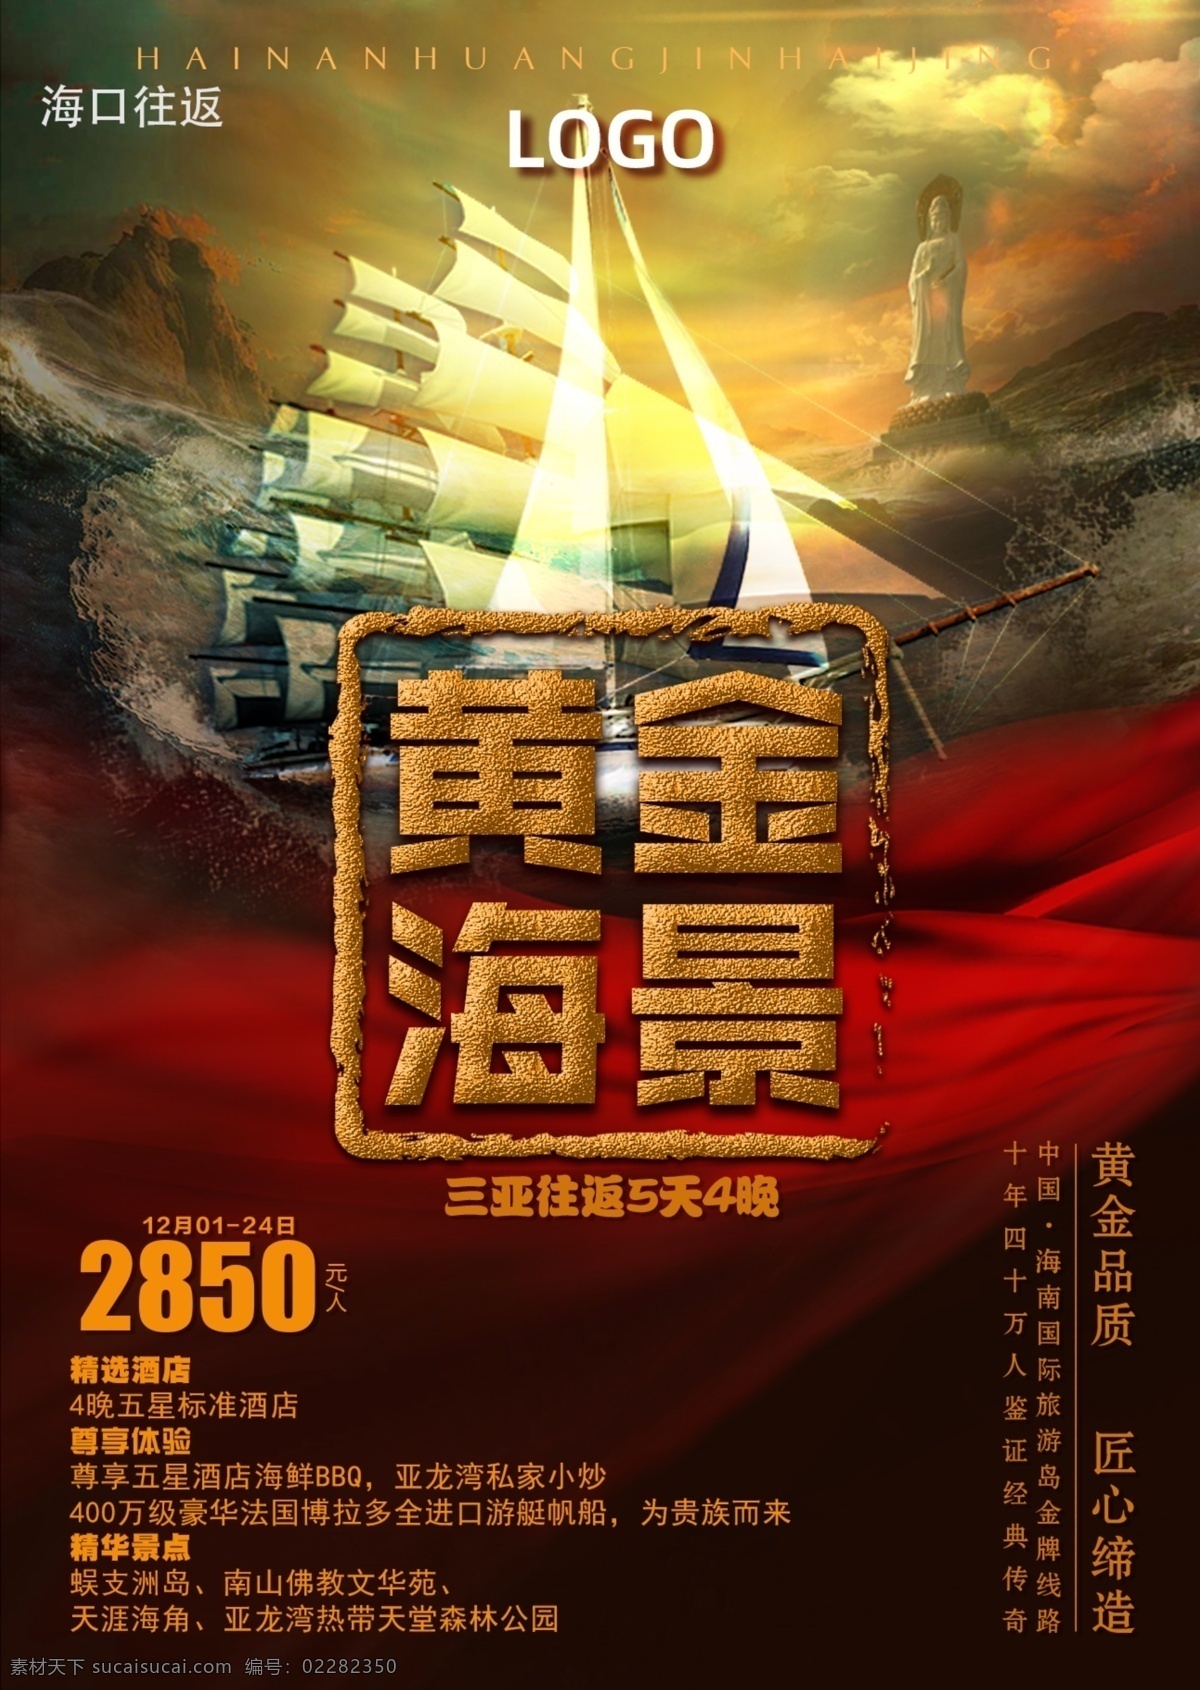 黄金海景 船只 金属 海南 三亚 海口 旅游 海边 宣传 行走 酒店 海报 高级感